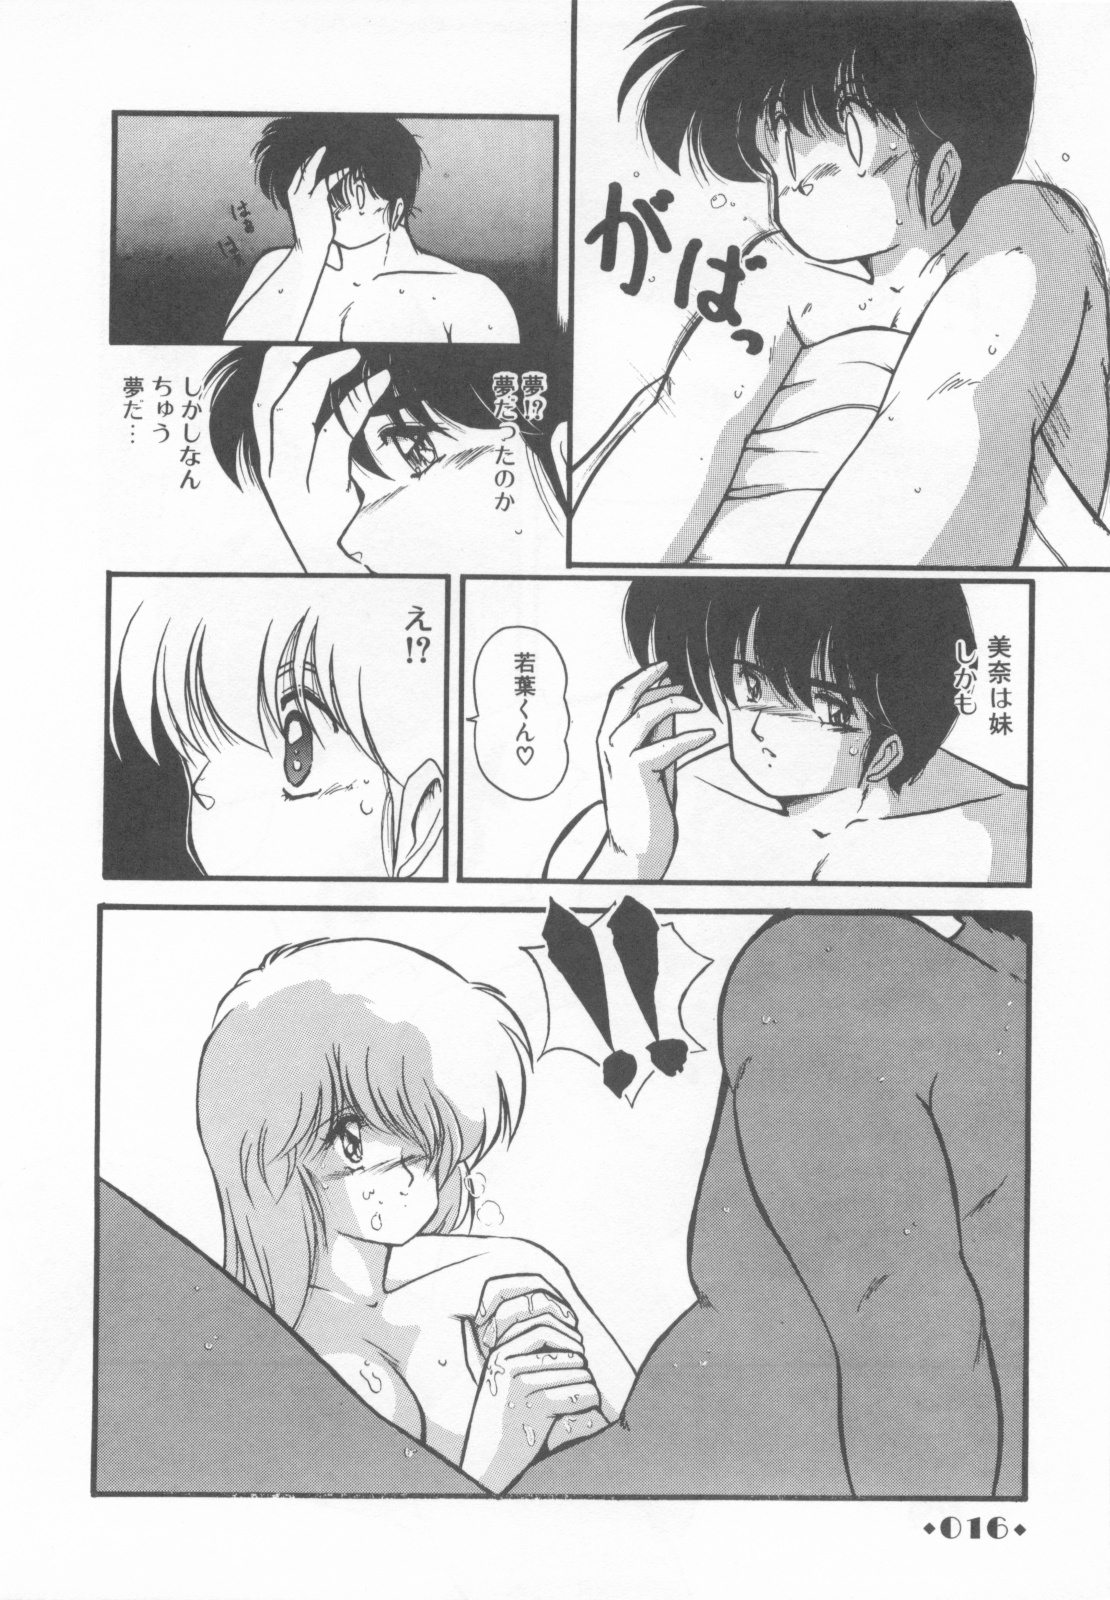 [Makuwa] Gomenne Mina-chan 1 page 18 full